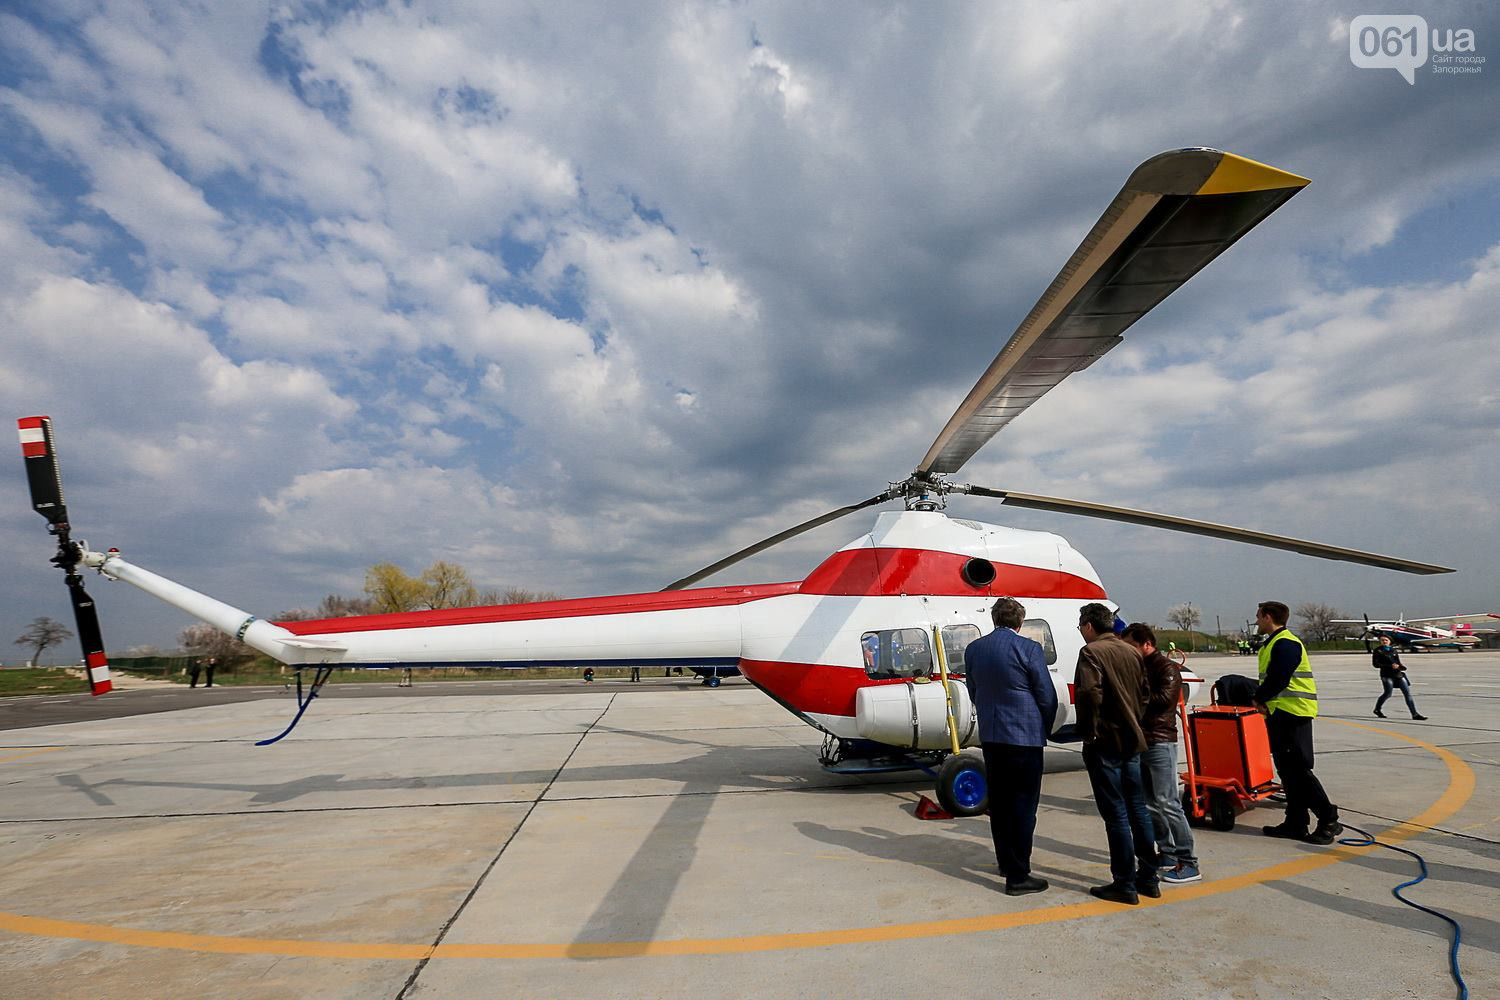 Таких аппаратов в Украине еще не было: уникальные кадры полета первого украинского вертолета - что собой представляет украинская "Надія"